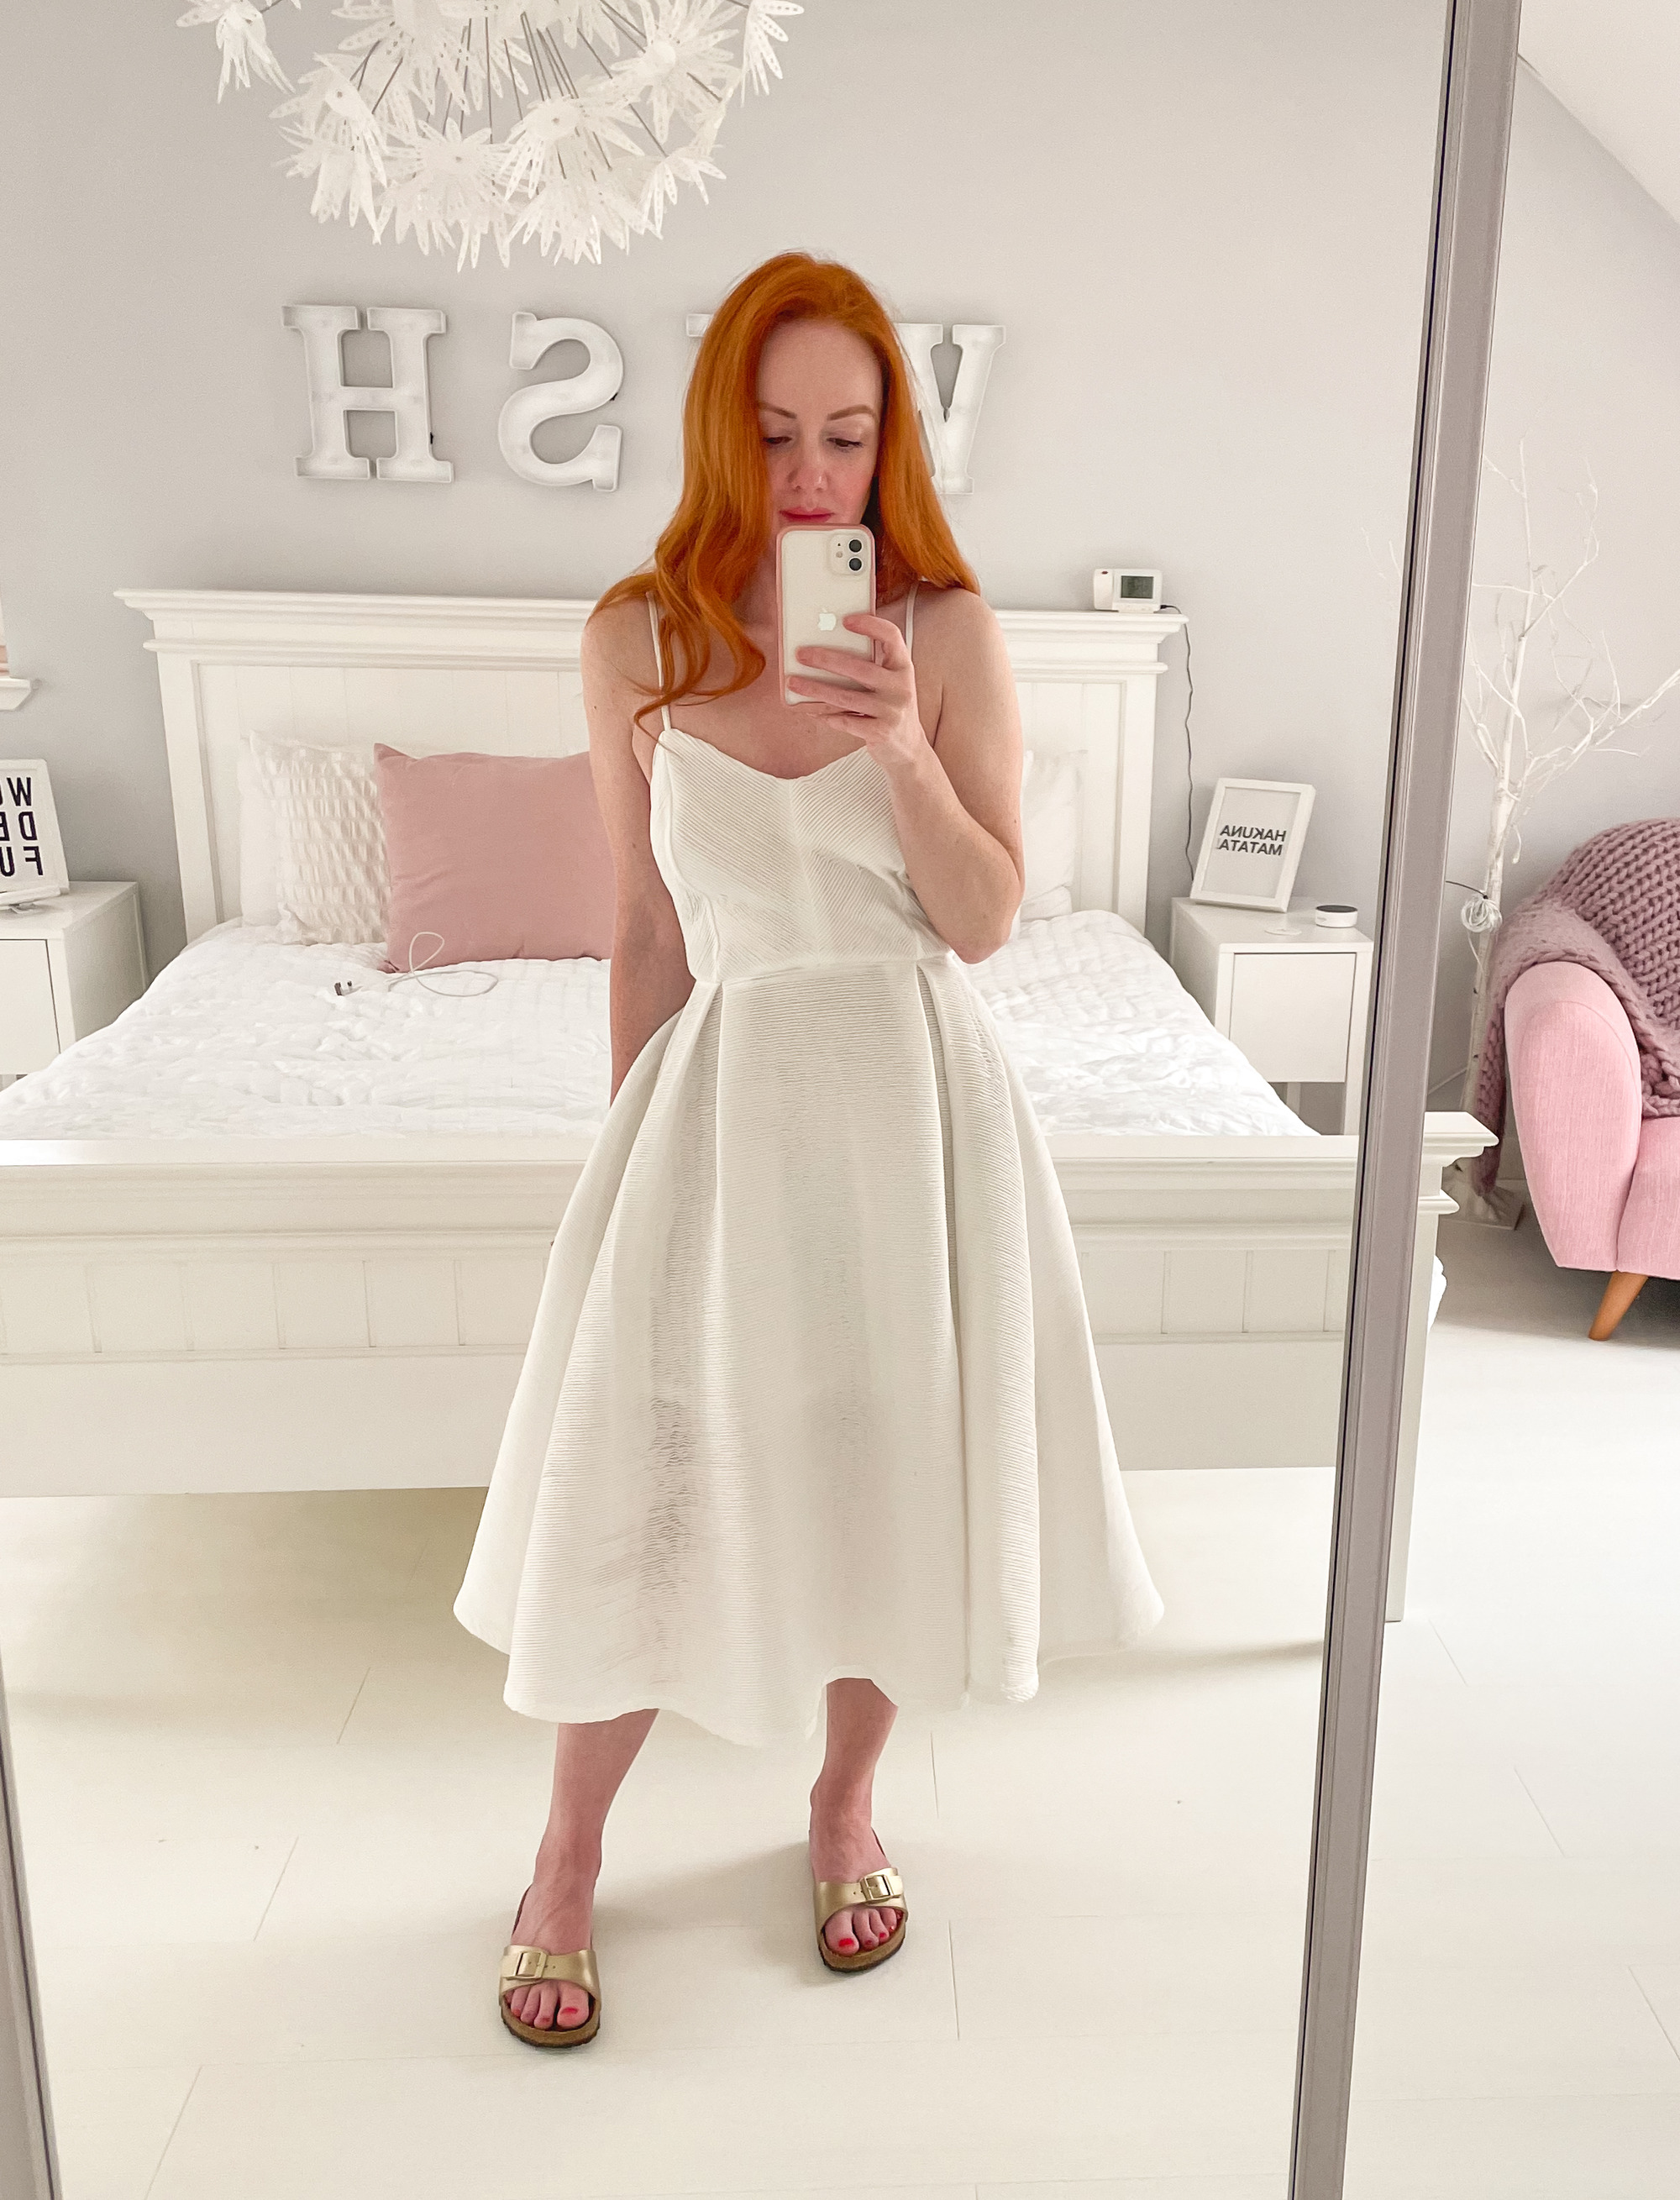 white summer dress